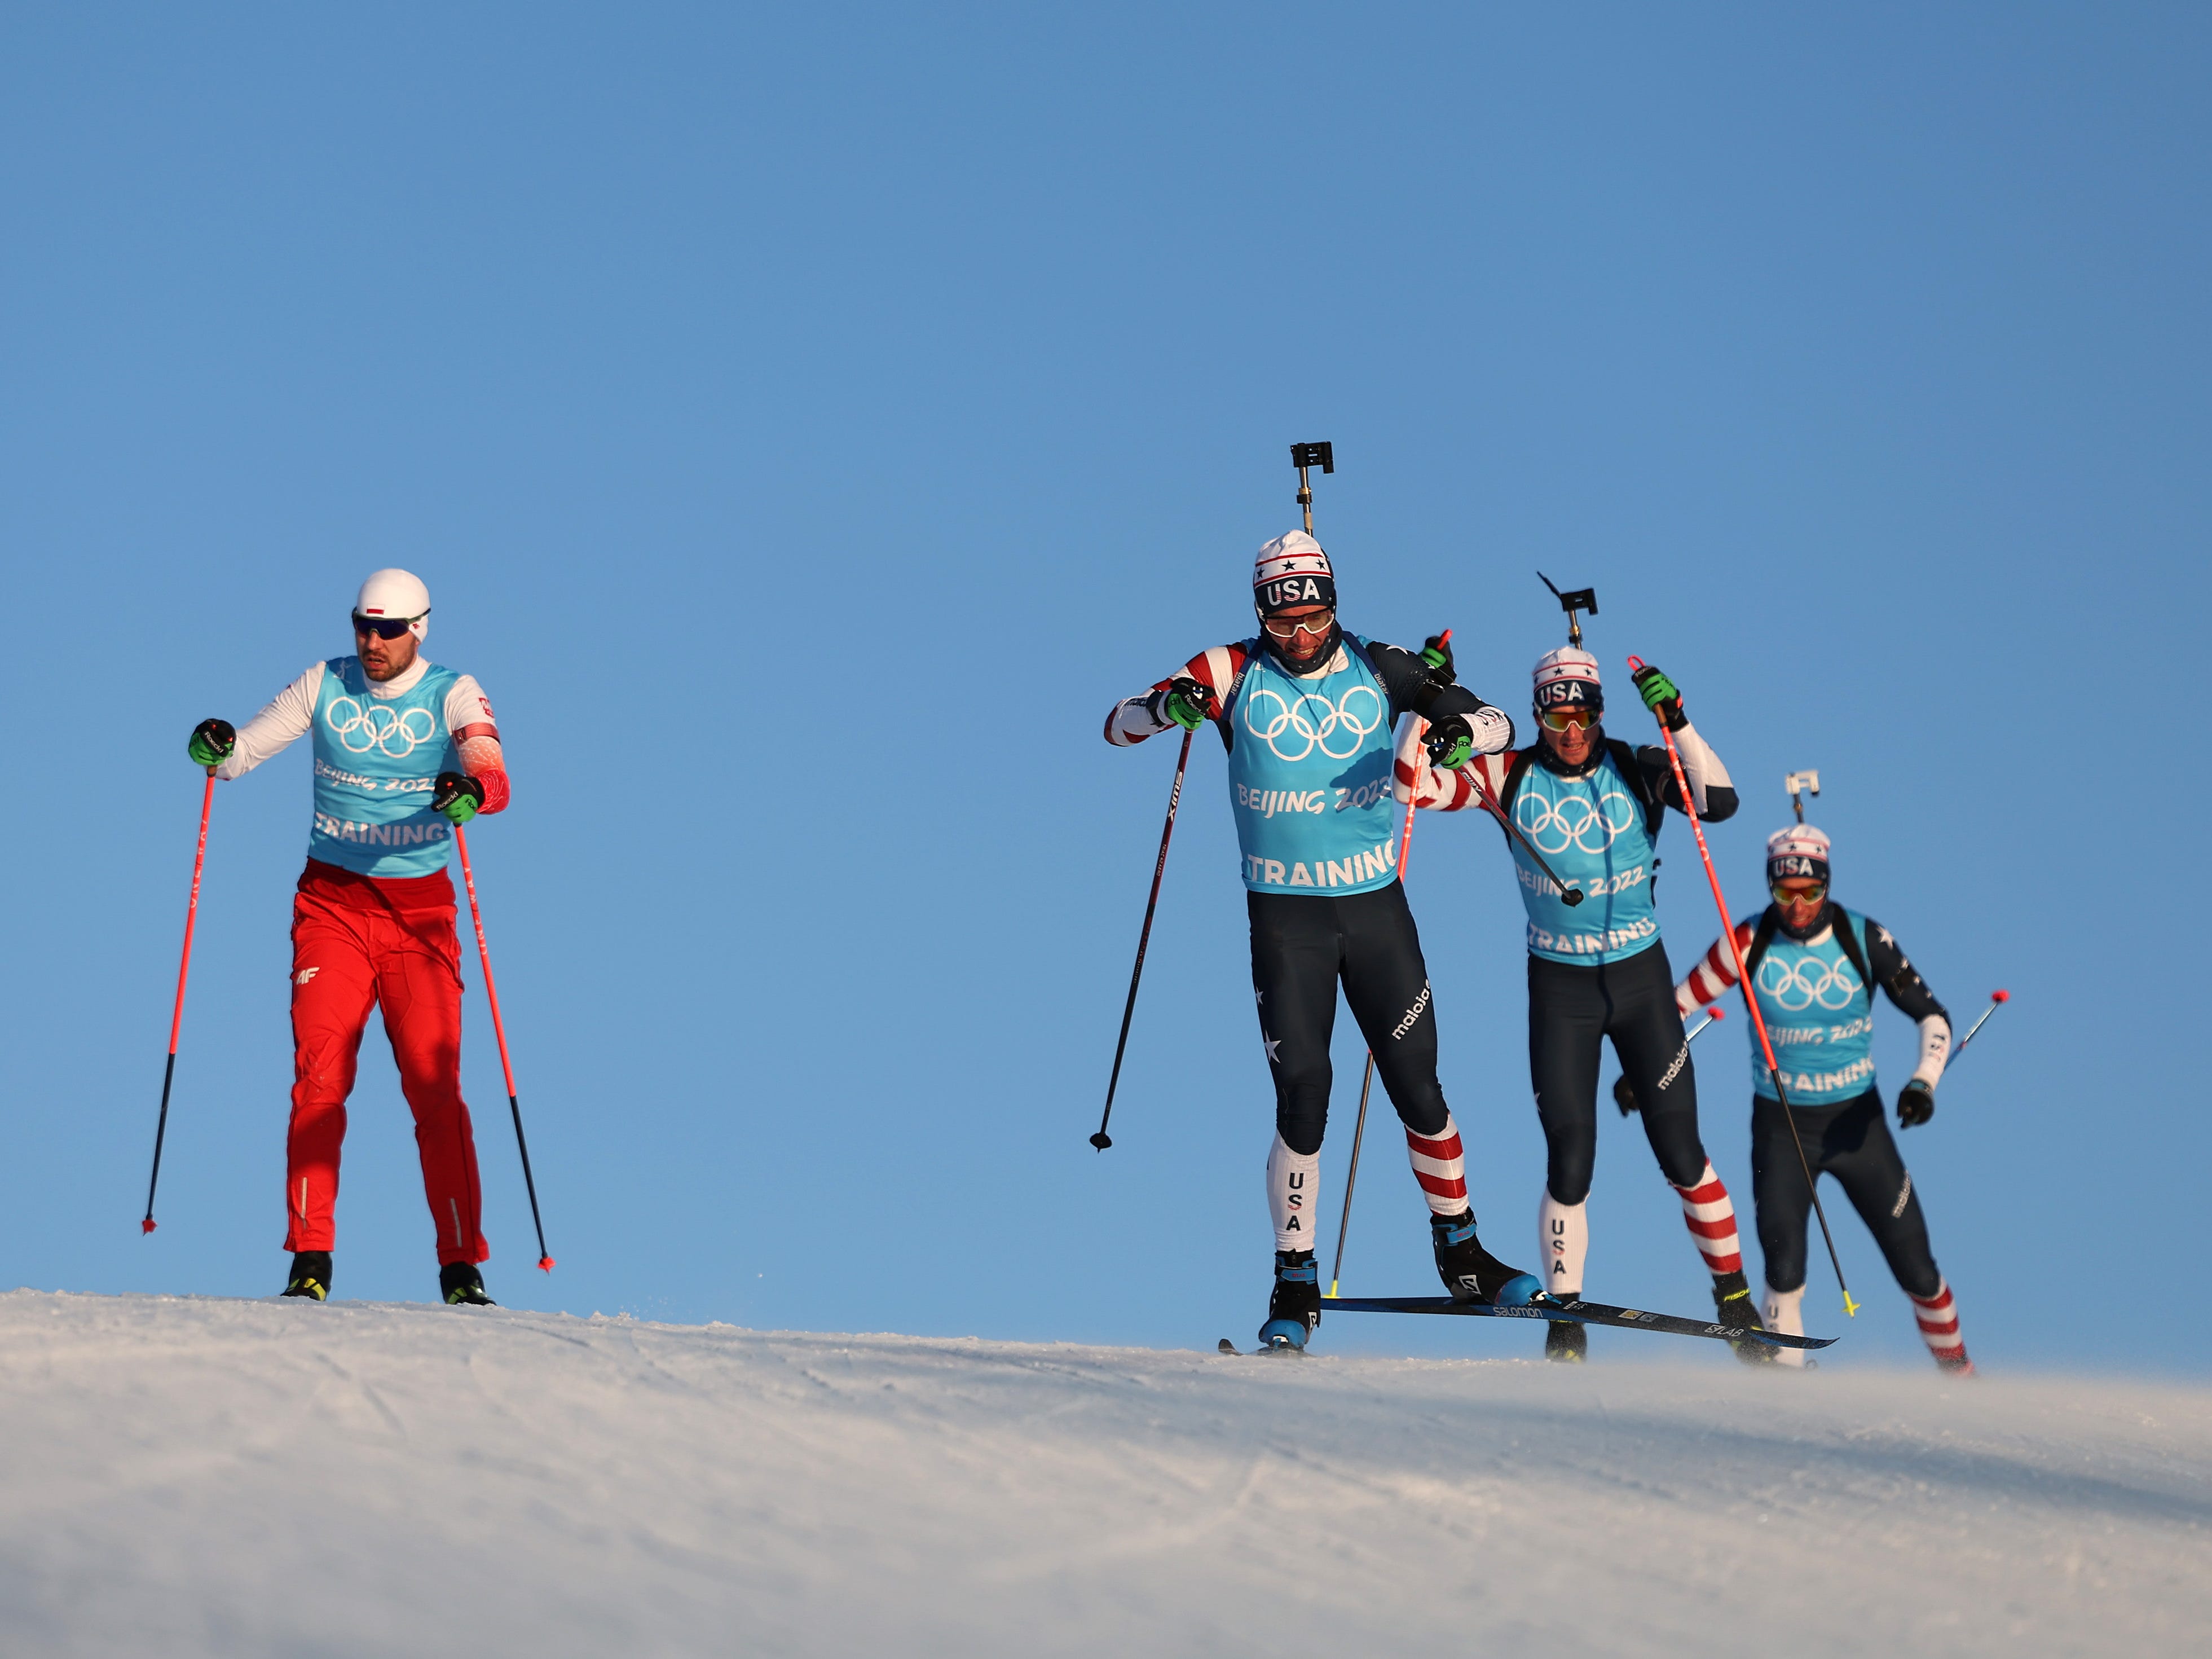 Eine Gruppe Biathlon-Skifahrer des Team USA trainiert für die Olympischen Spiele 2022 in Peking.